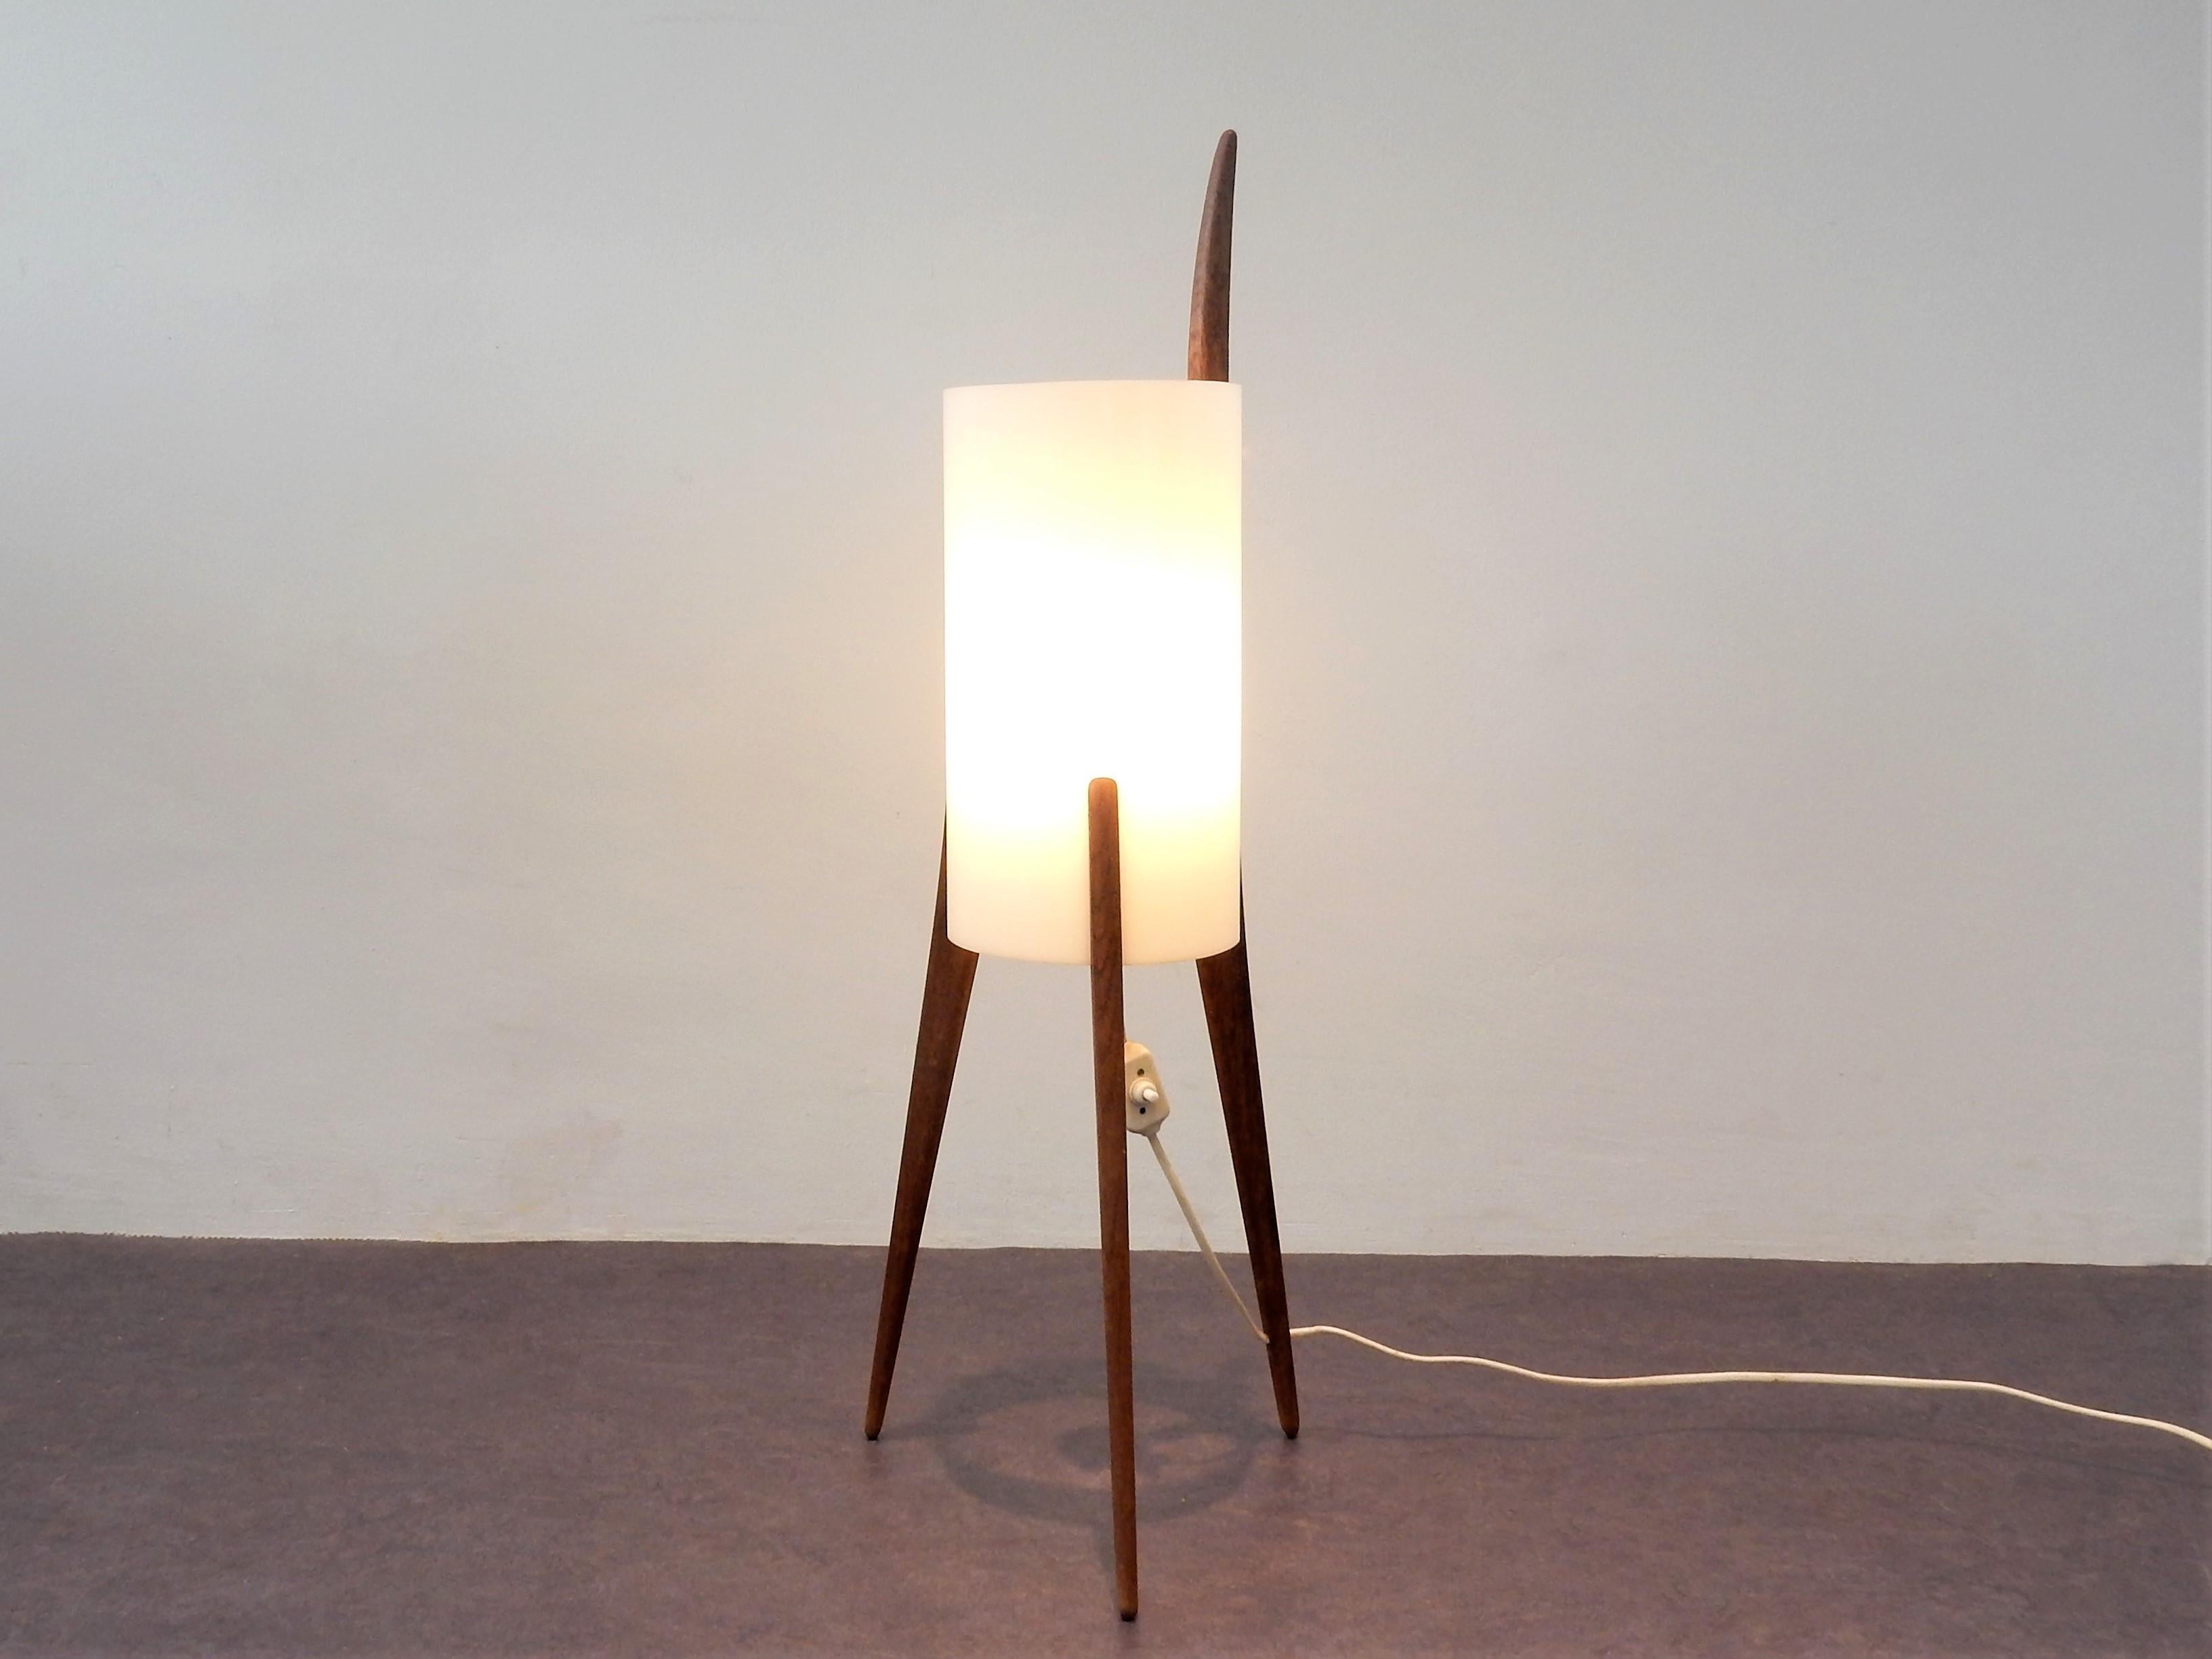 Ce fabuleux et rare lampadaire a été conçu par Uno & Östen Kristiansson pour Luxus dans les années 1950 ou 1960. Il est composé d'un trépied en chêne traité à l'huile et d'un abat-jour en forme de tube en plexiglas, qui donne une belle lumière